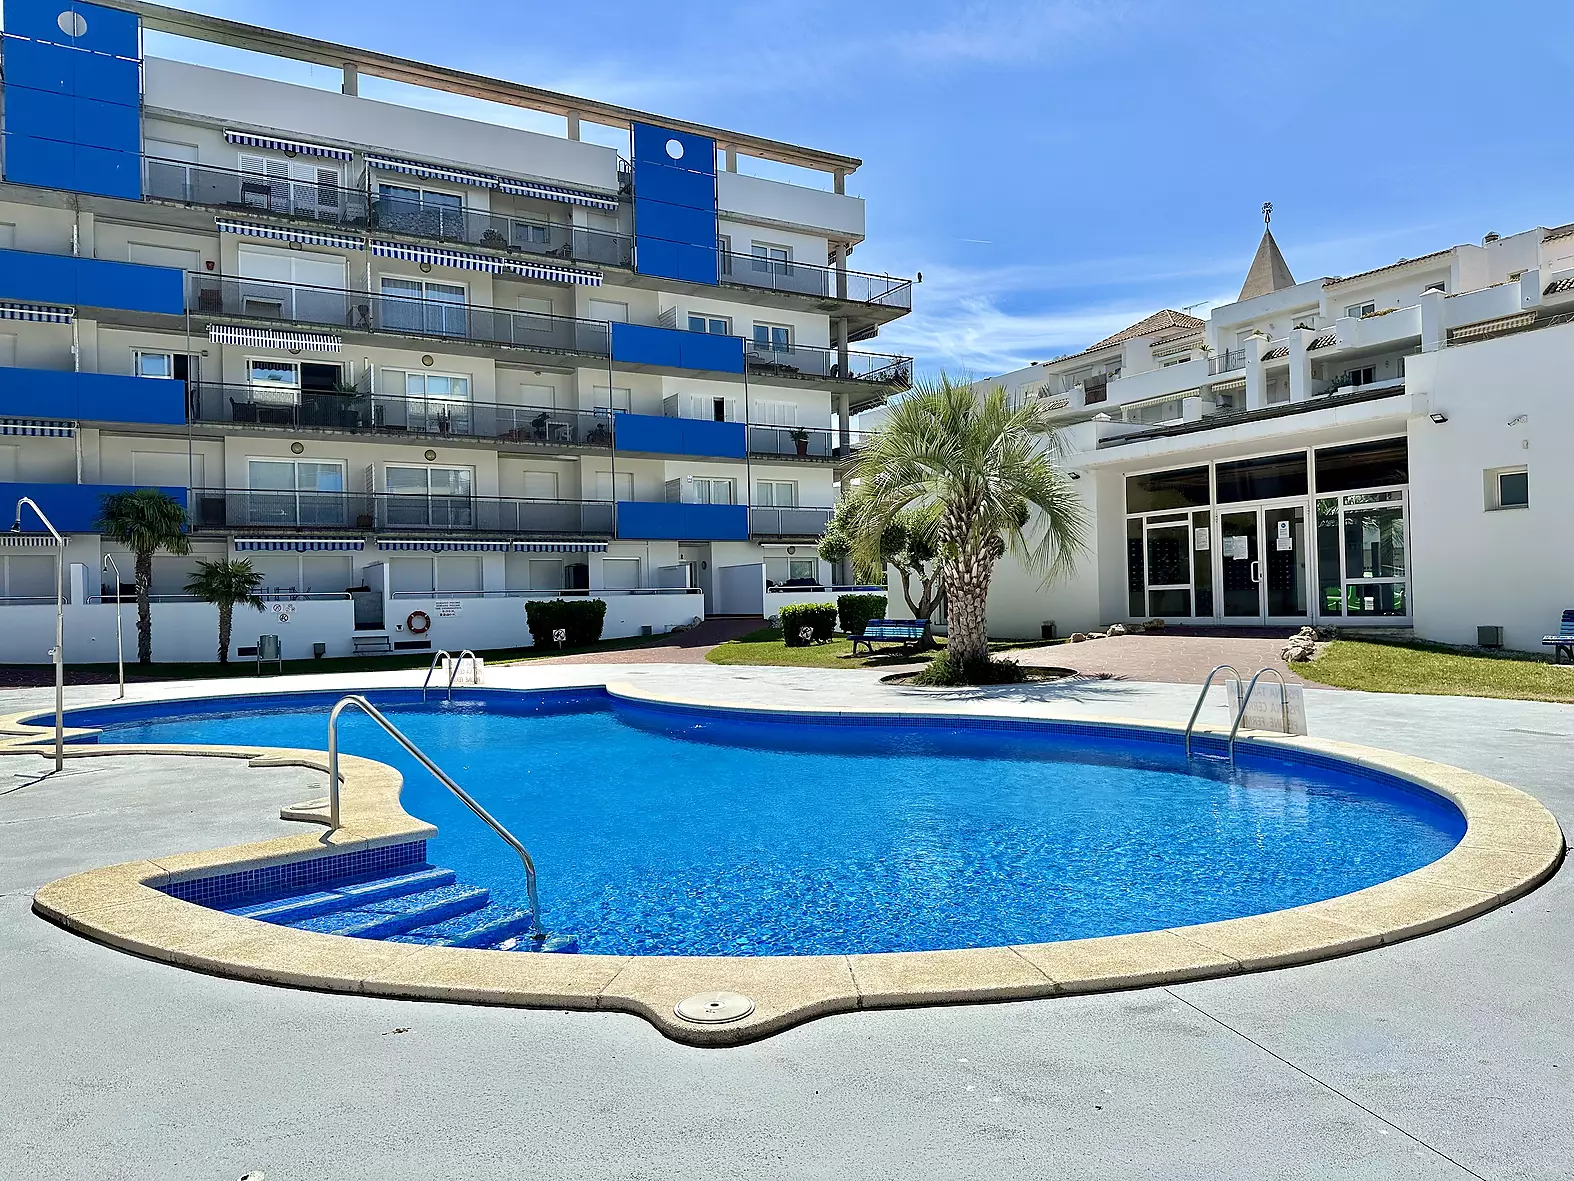 Increïble àtic amb piscina i llicència turística, a Roses - Santa Margarita